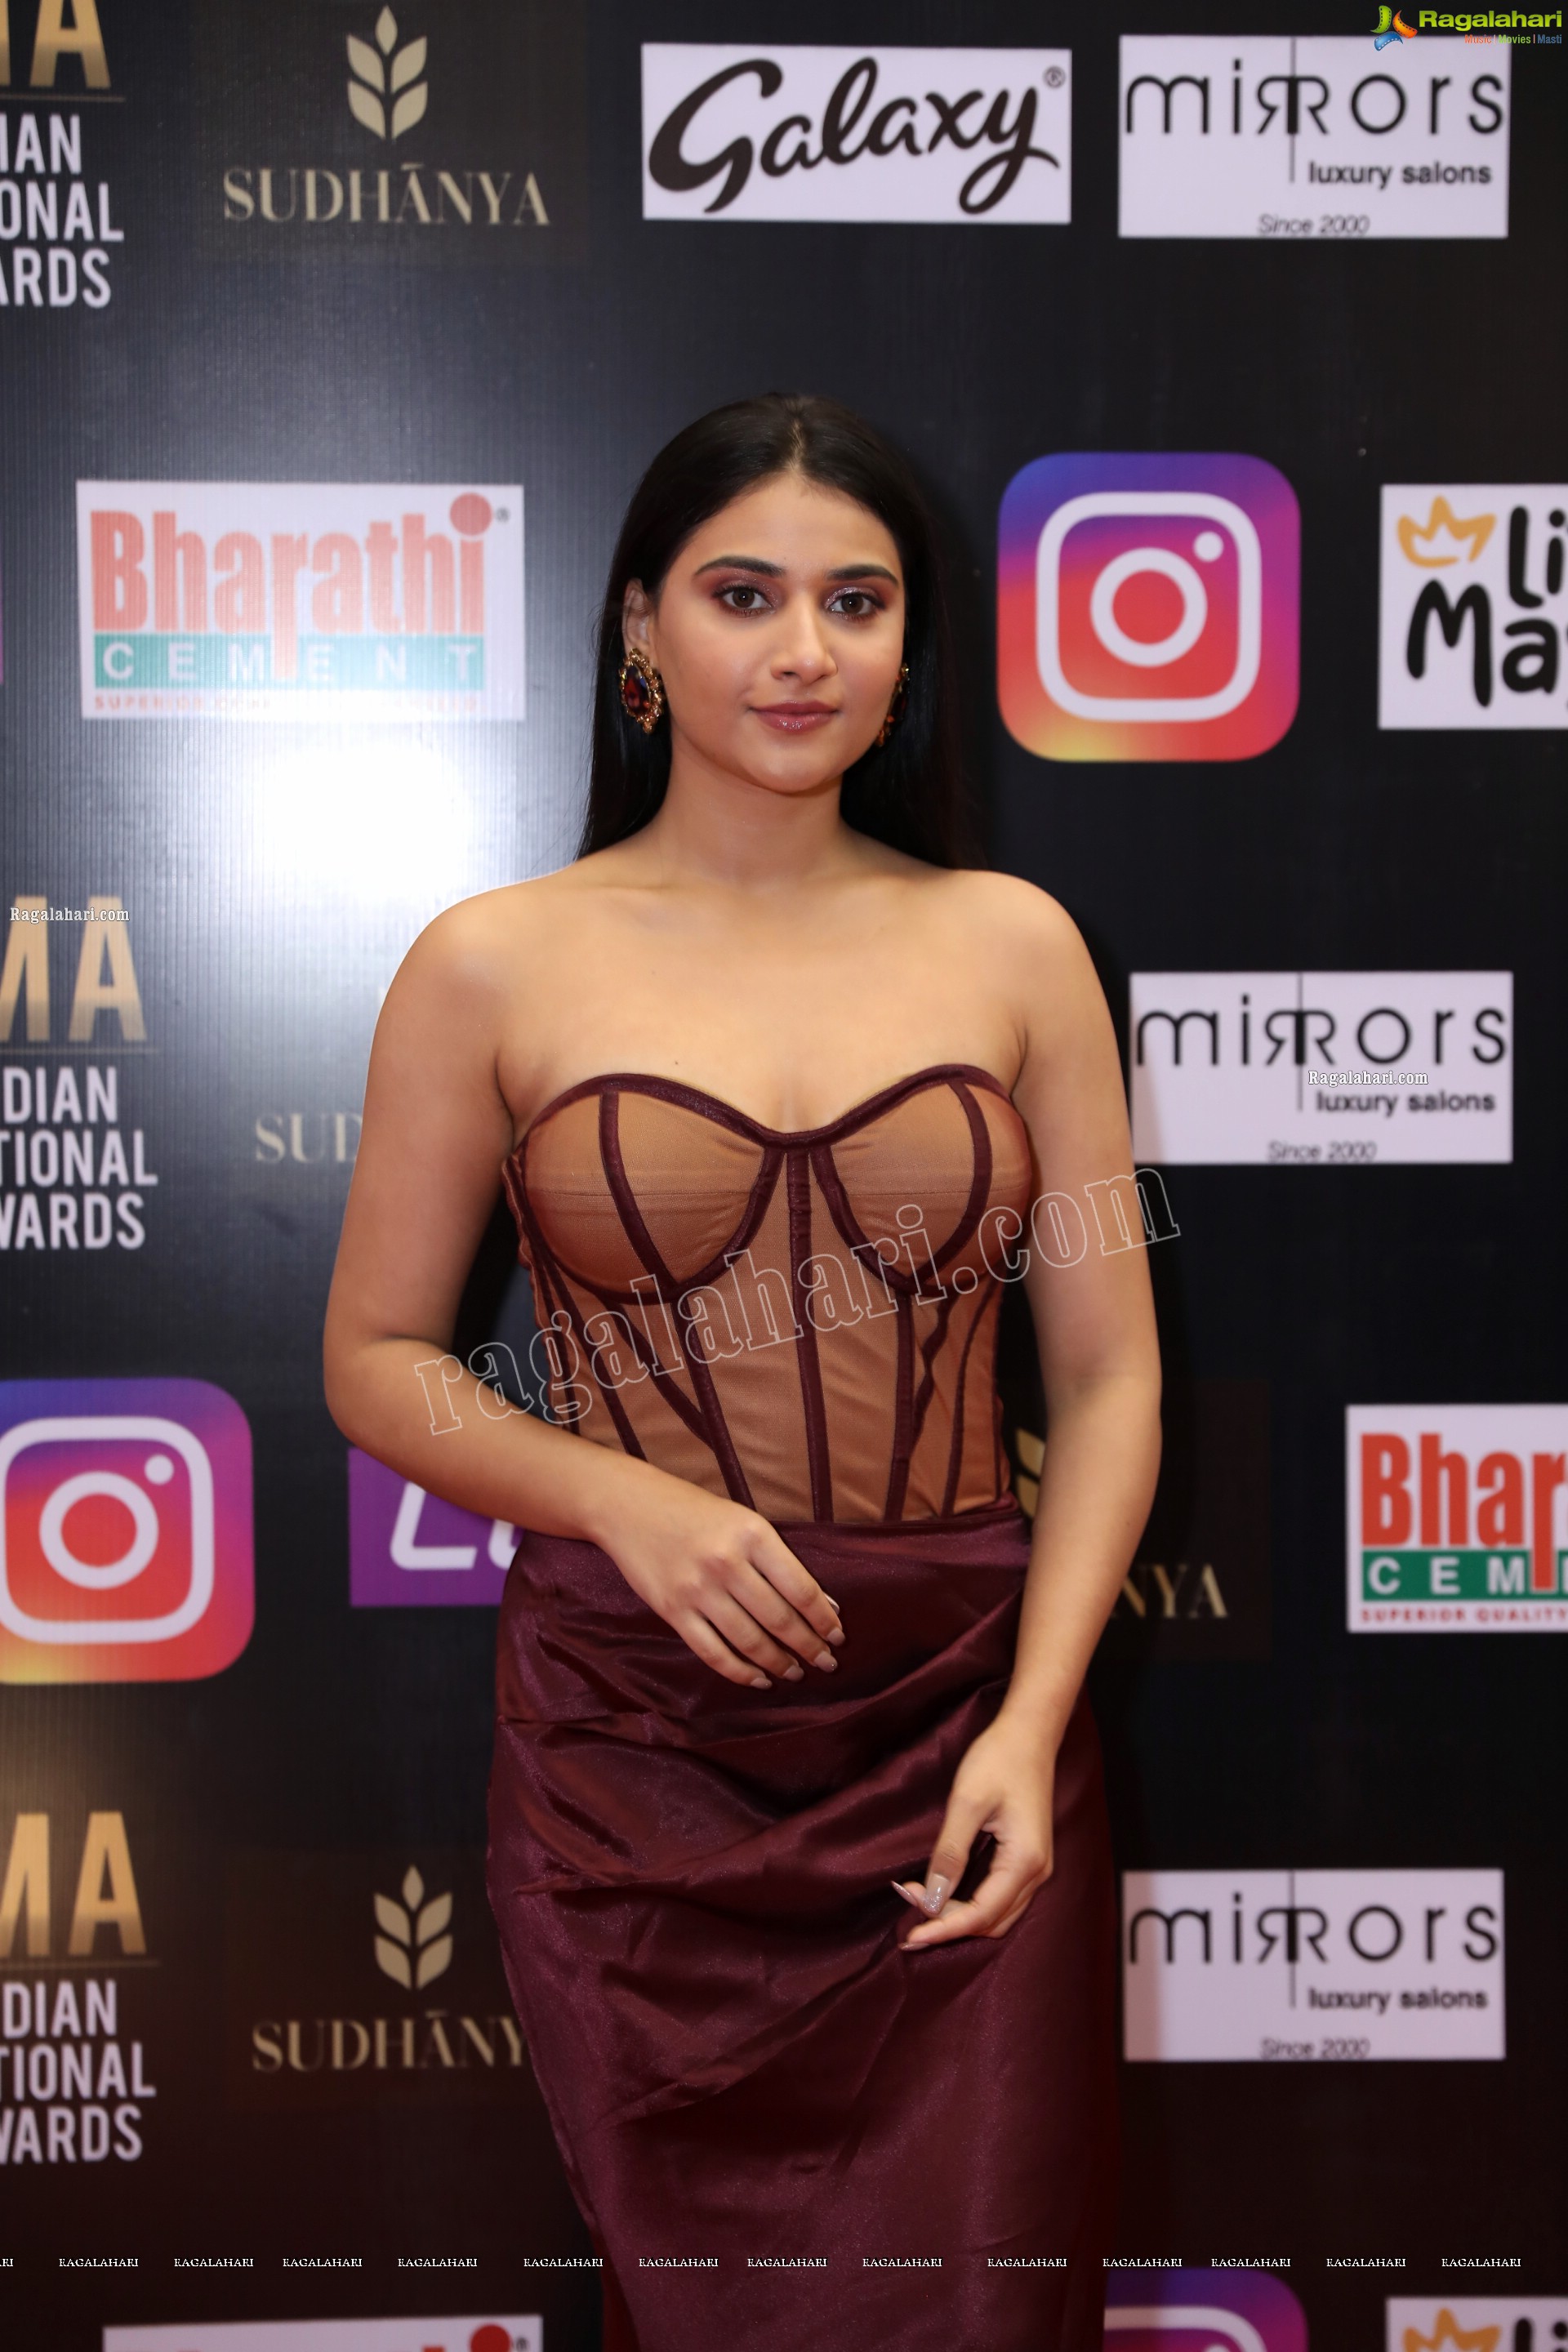 Priya Singh at SIIMA Awards 2021 Day 2, HD Photo Gallery